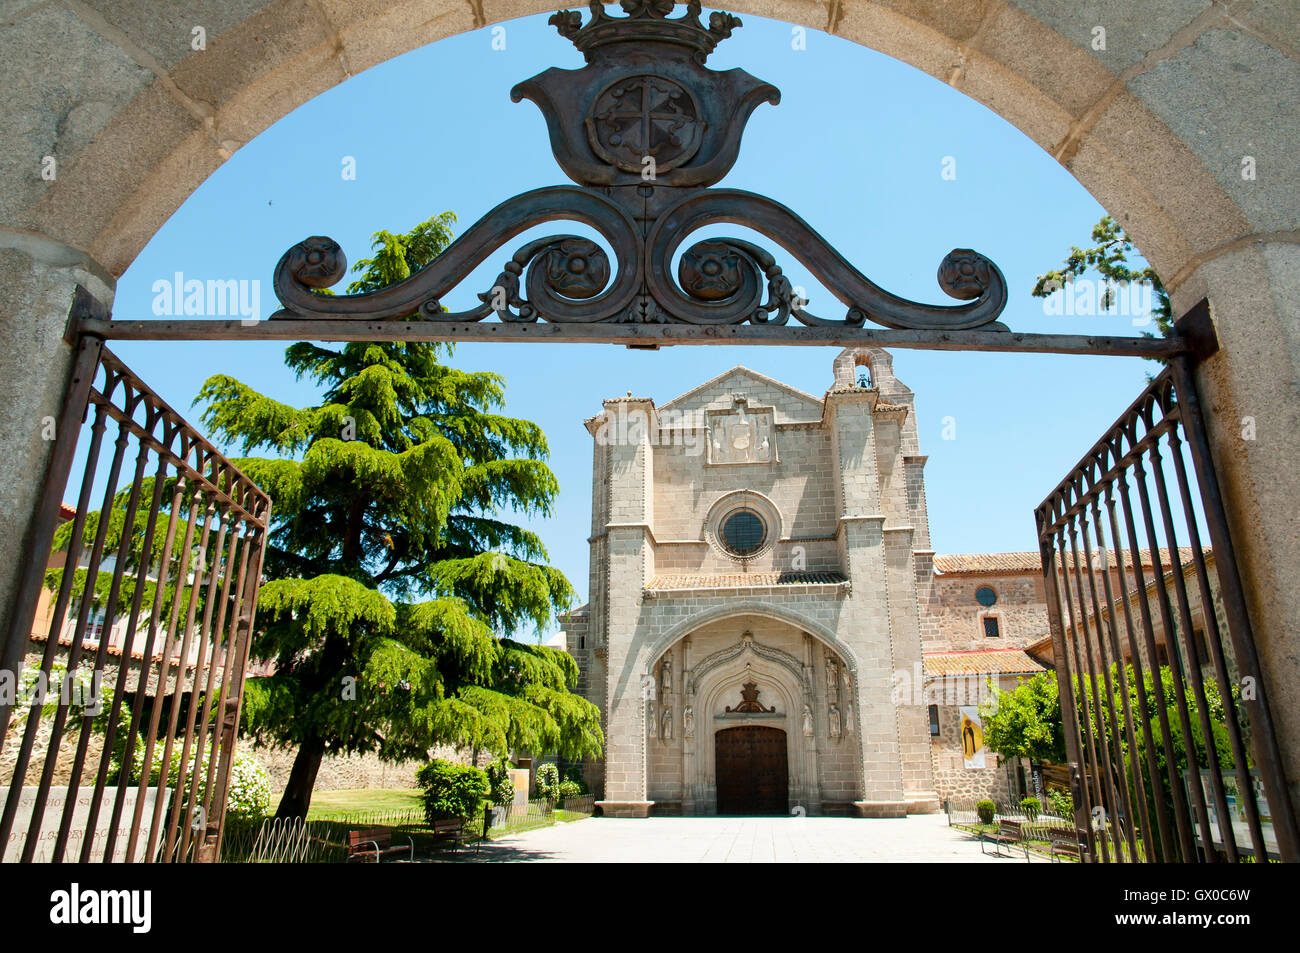 St Thomas Royal Monastery - Avila - Spain Stock Photo